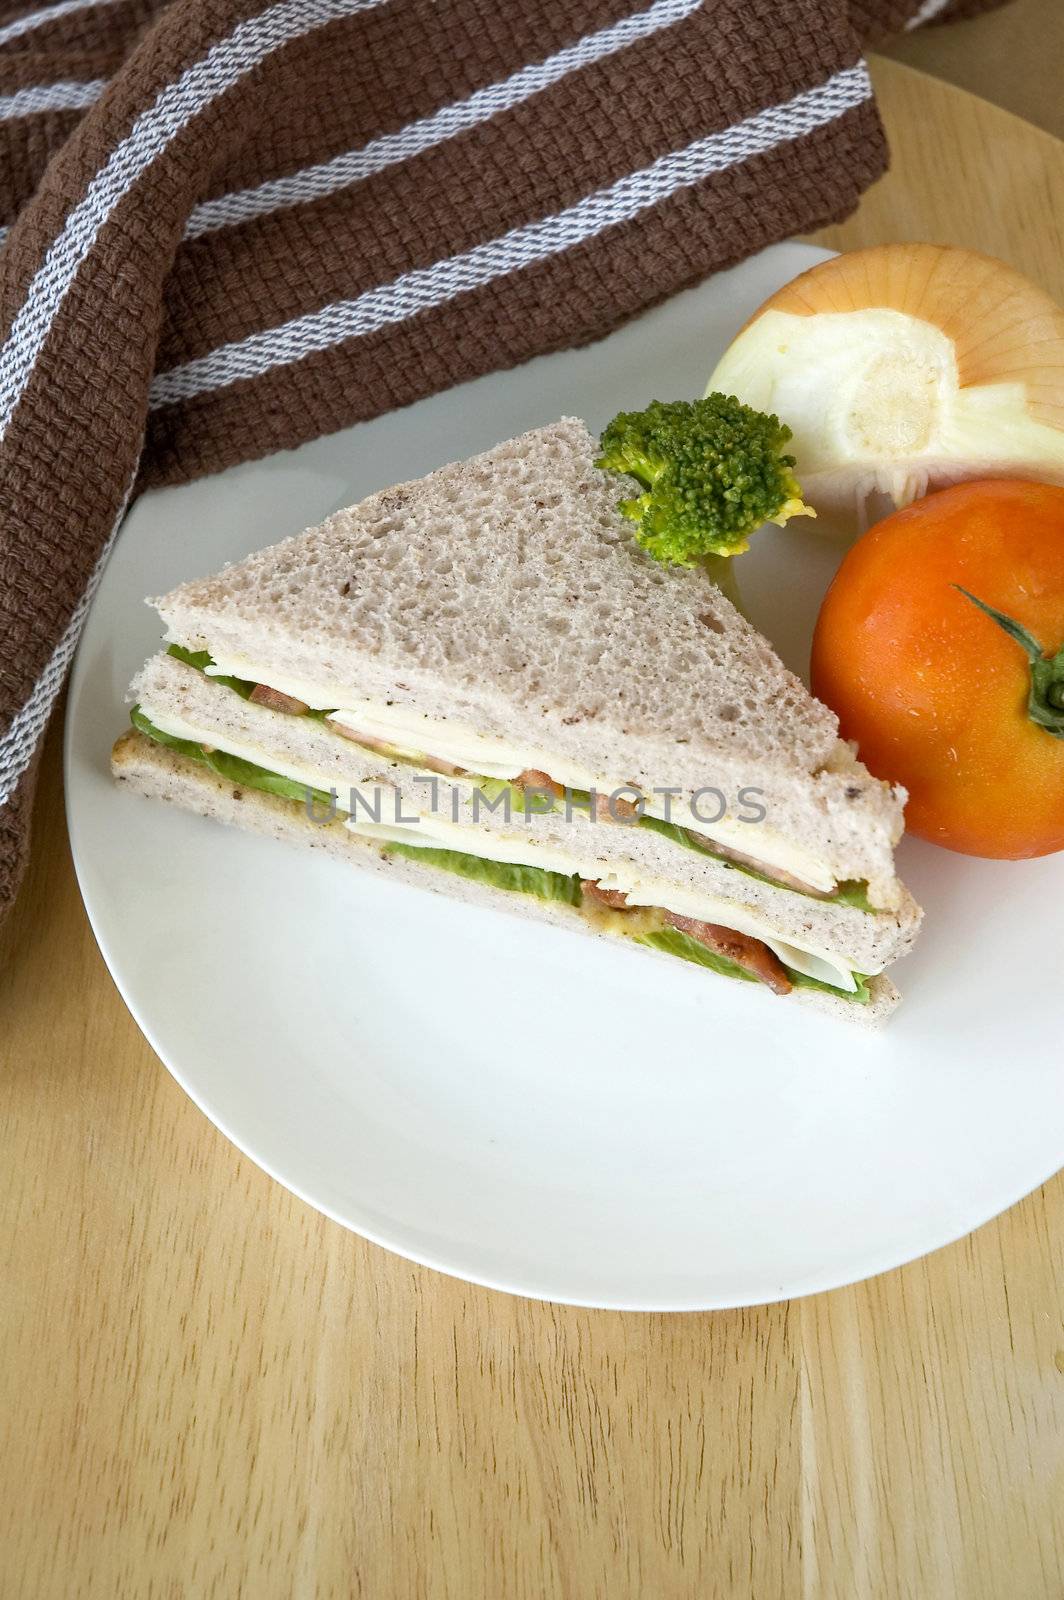 gaba bread sandwich on white plate